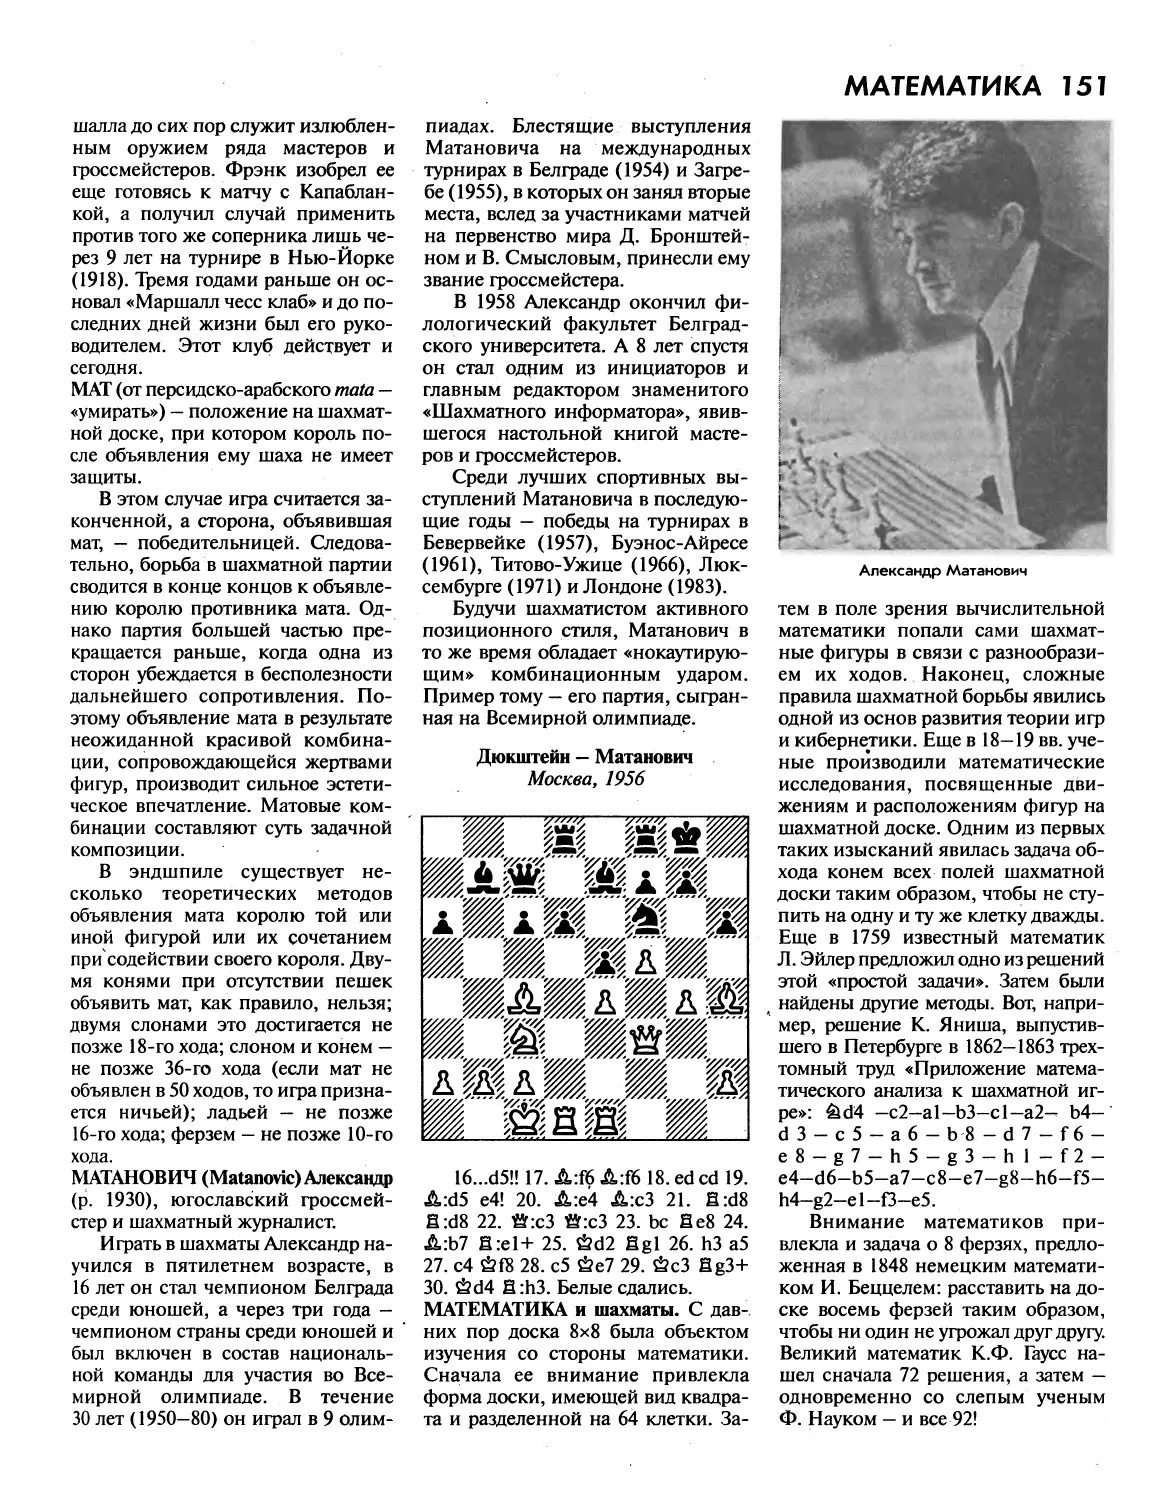 Мат
МатановичА.
Математика и шахматы